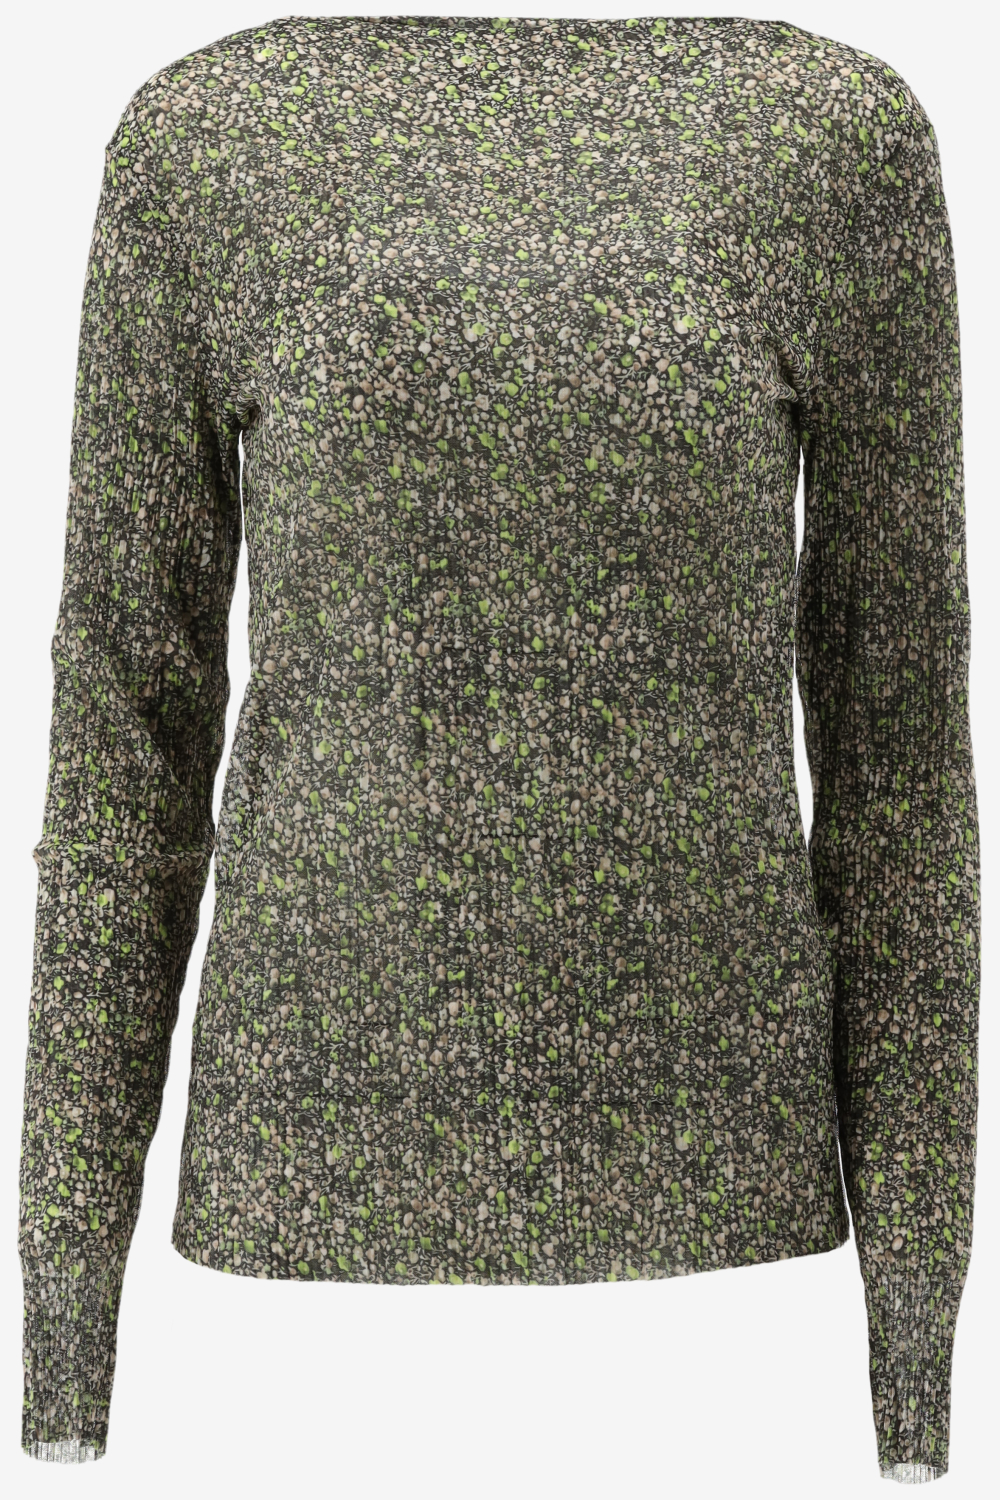 Catwalk Junkie Ls Moss Flowers Tops & T-shirts Dames - Shirt - Groen - Maat L